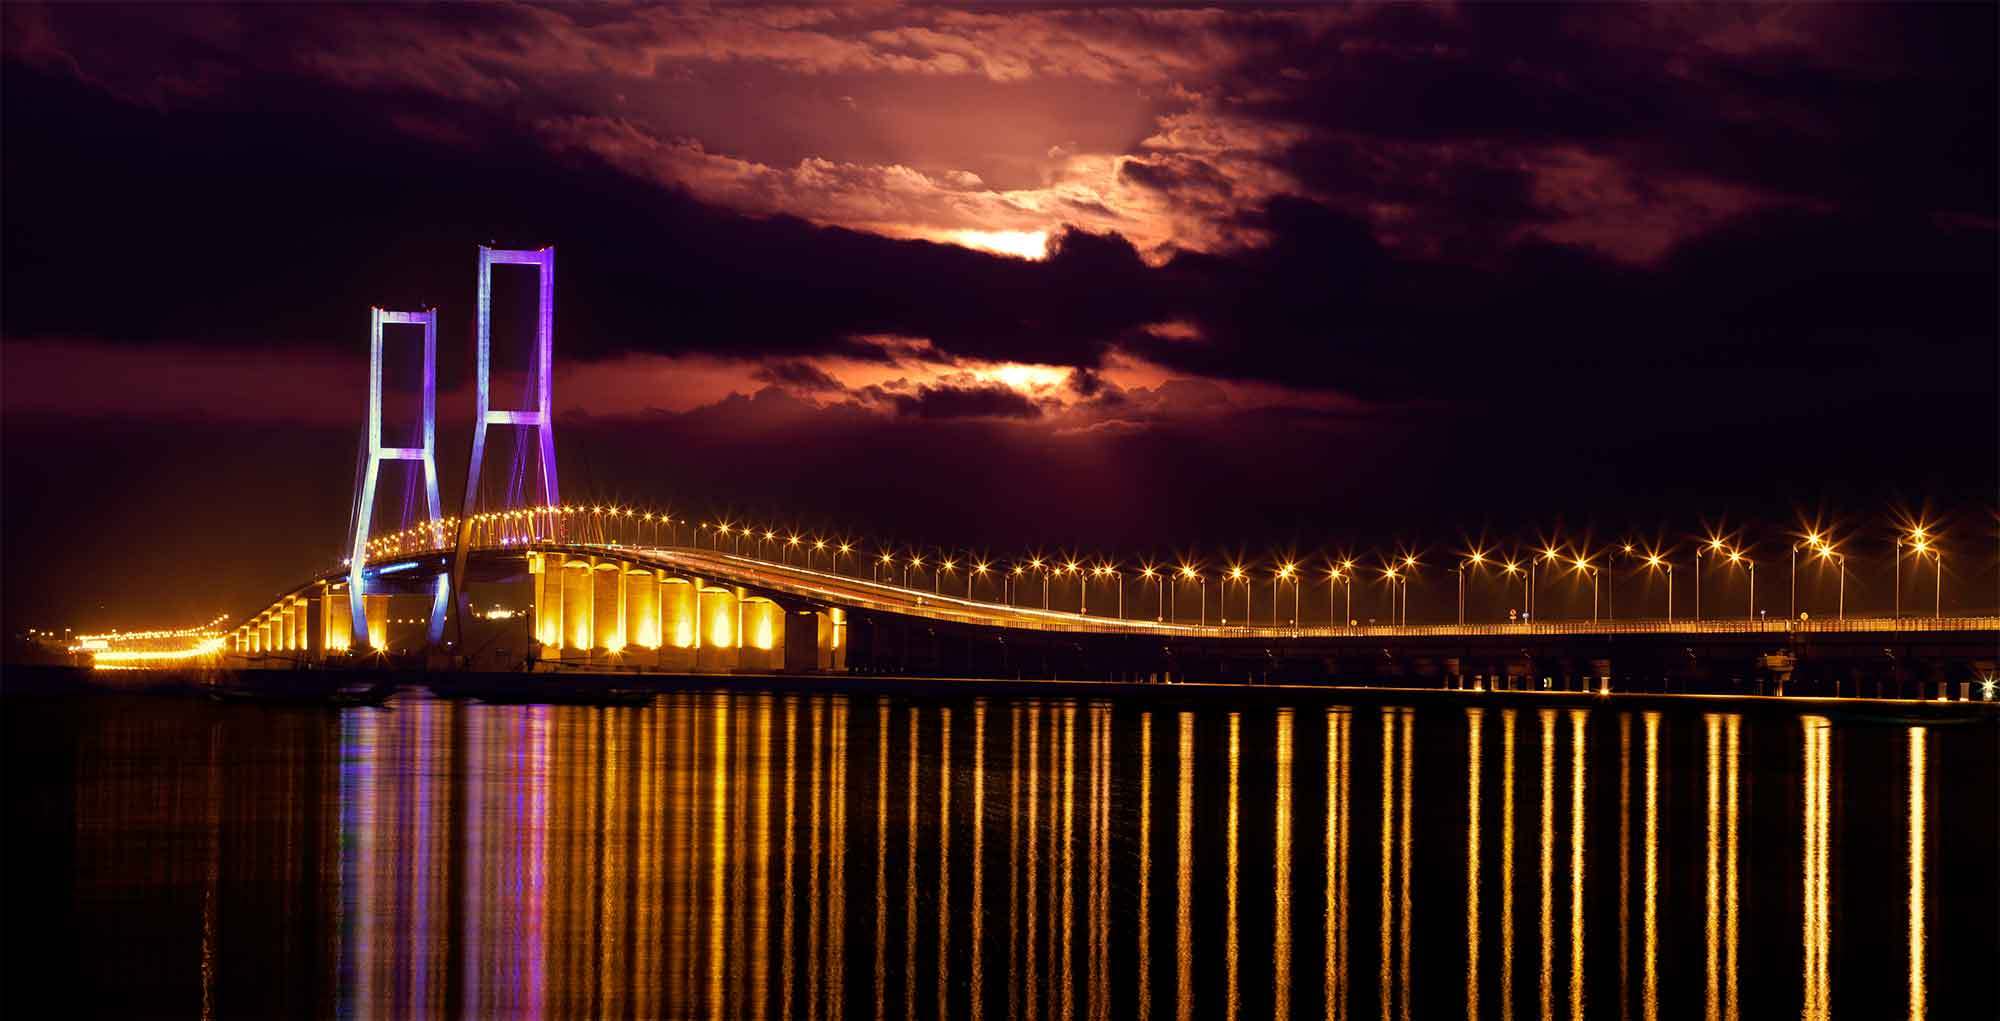 Jembatan terpanjang di Indonesia ada di Surabaya | Putera Mentari